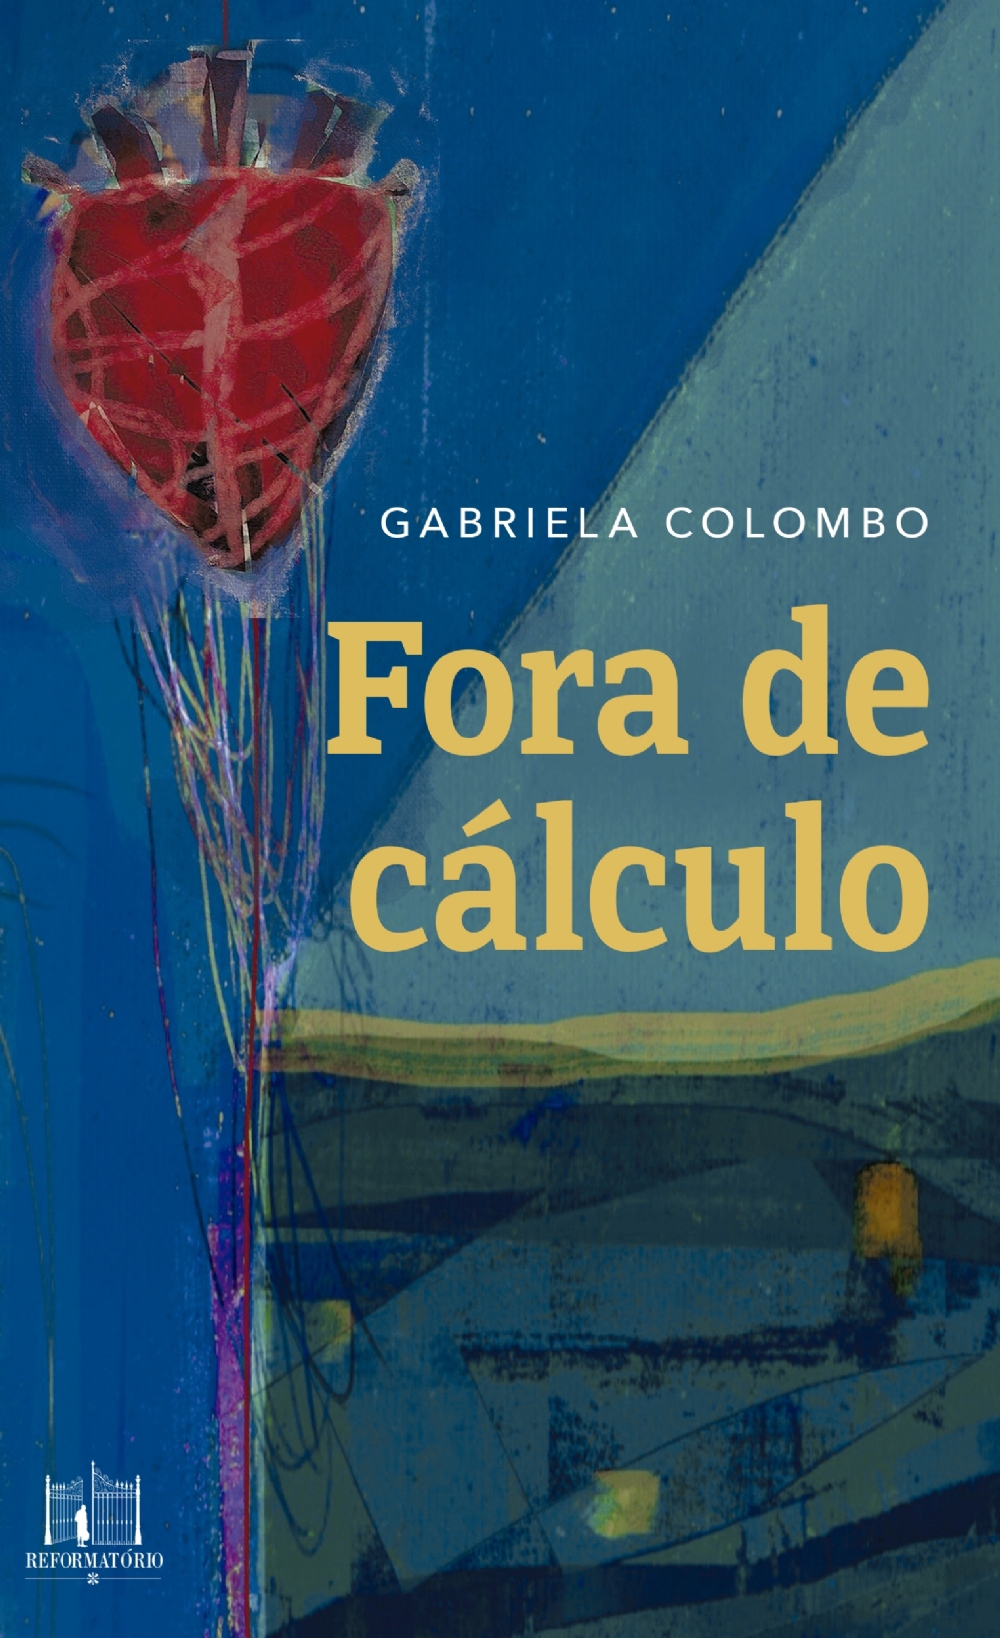 Gabriela Colombo - Livro de contos 'Fora de Cálculo' desenvolve rotinas de vida abaladas por ordem simbólicas do absurdo